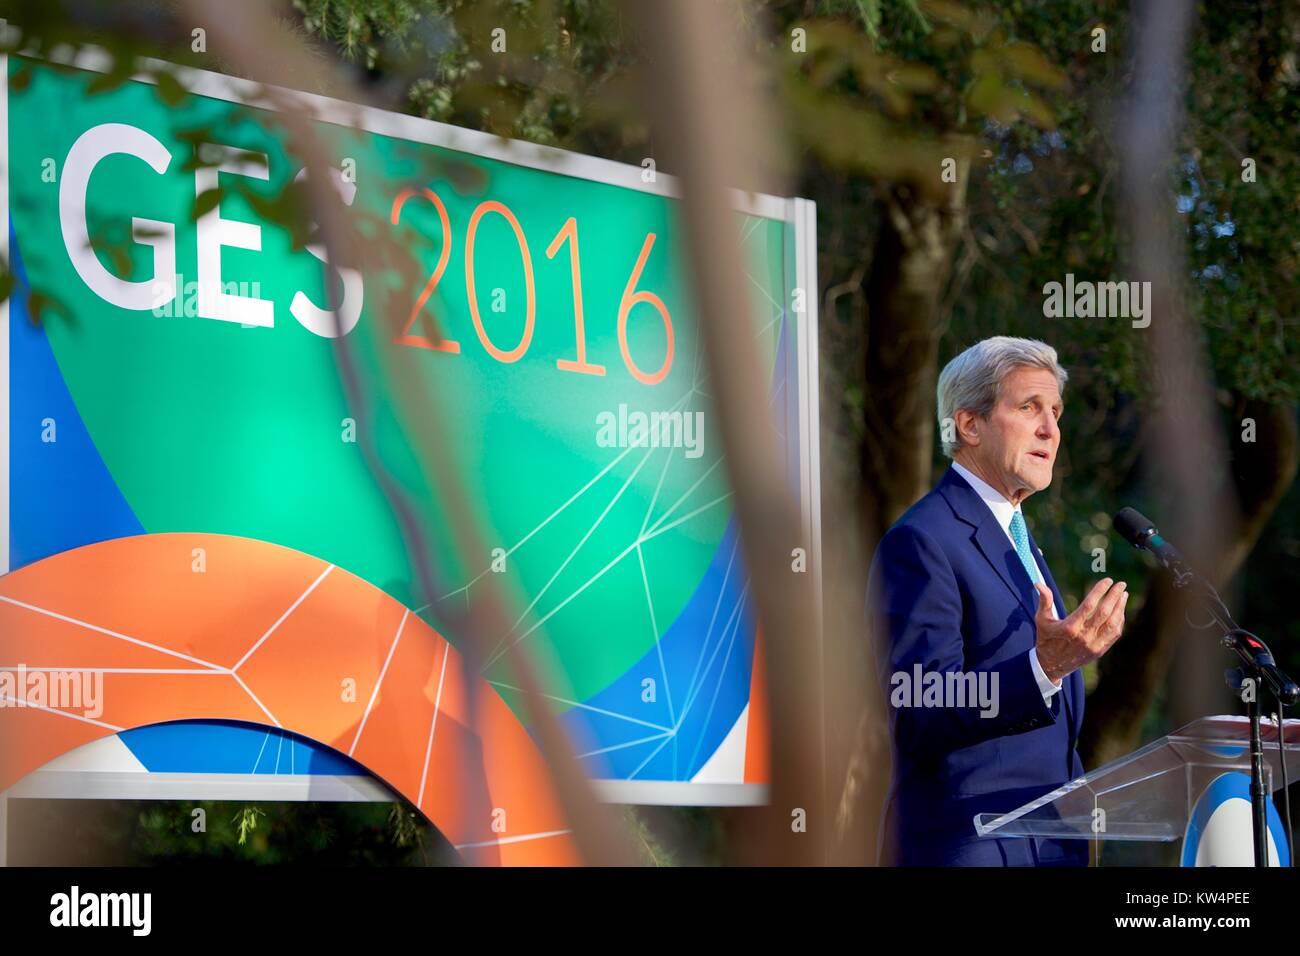 US-Außenminister John Kerry die Begrüßung bei der Global Entrepreneurship Summit, Palo Alto, Kalifornien, 22. Juni 2016. Mit freundlicher Genehmigung des US-Staates. Stockfoto